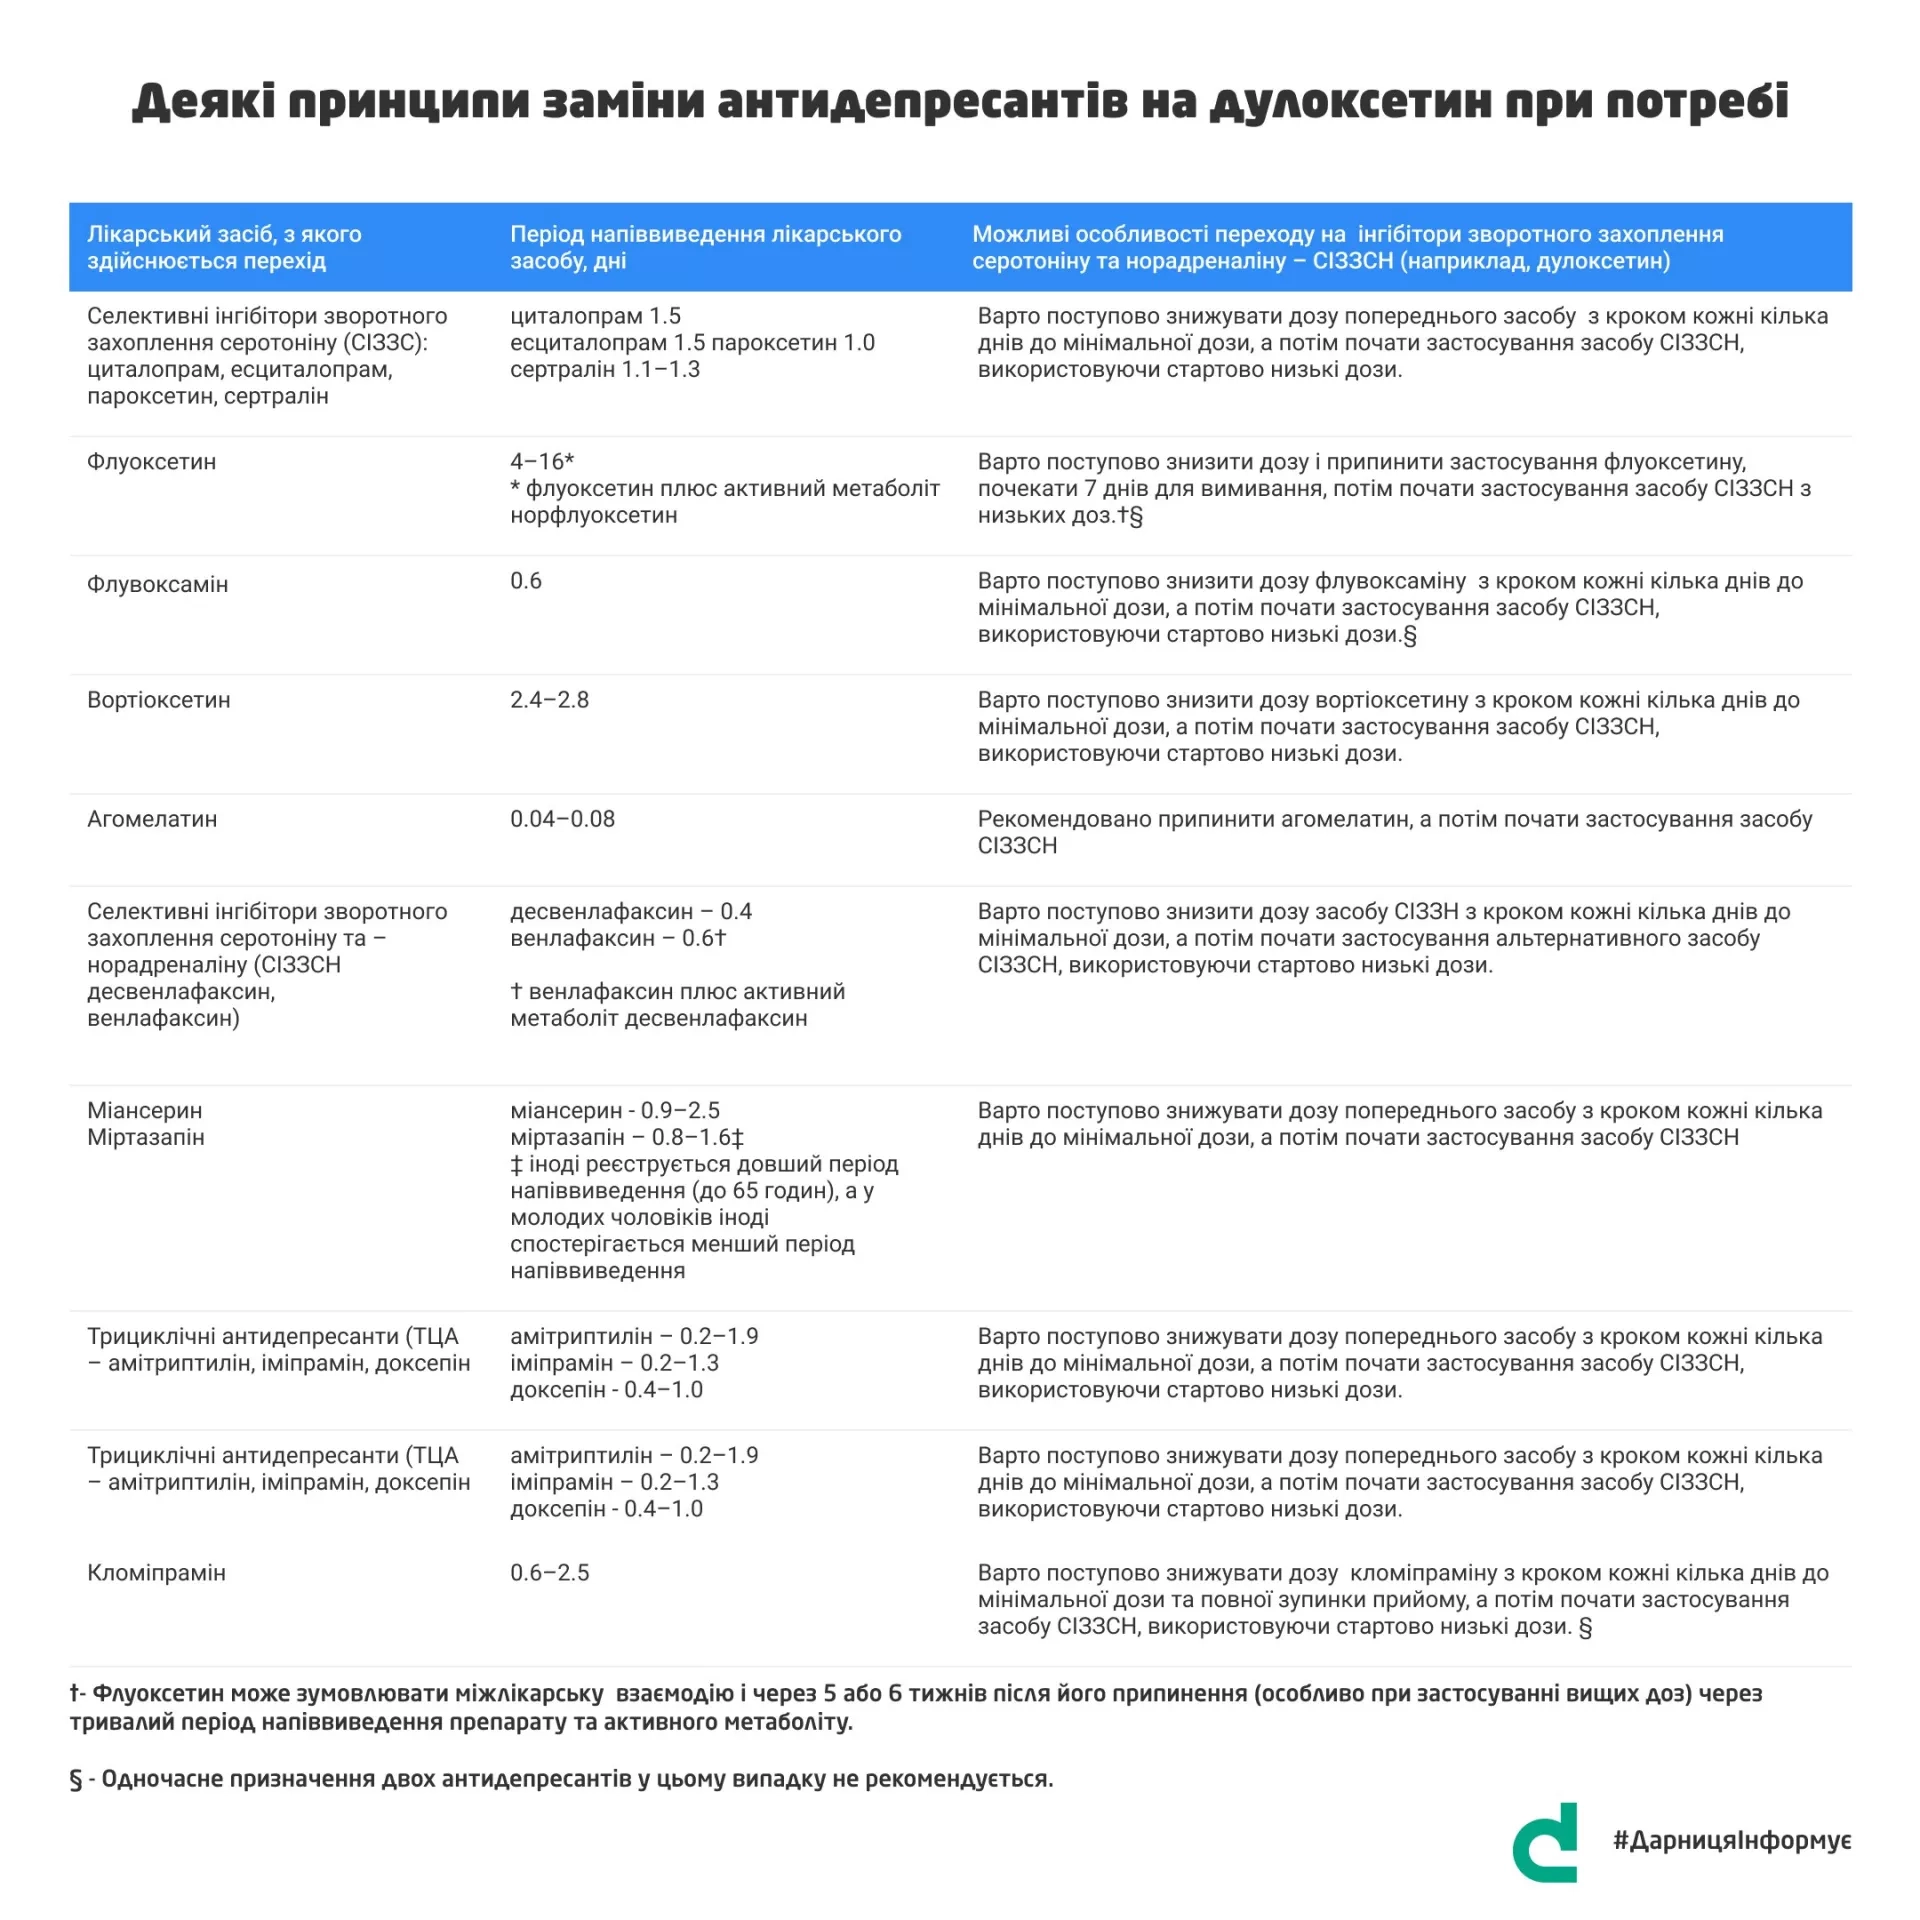 #ДарницяІнформує: Еквівалентні дози дози антидеприсантів та антипсихотичних засобів